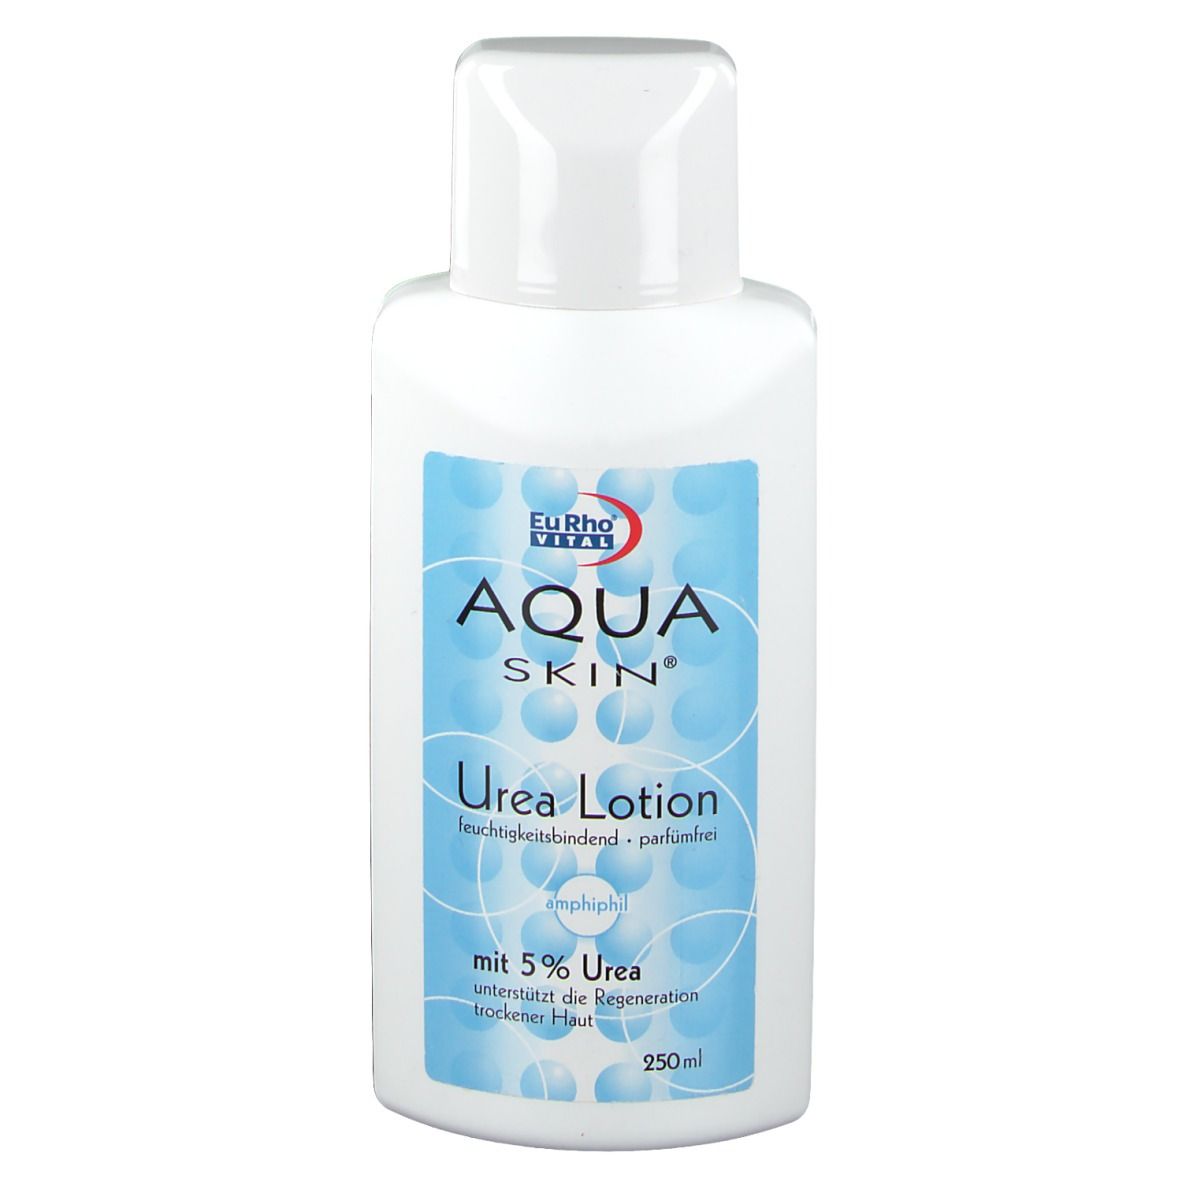 Image of Aqua Skin® Urea Lotion